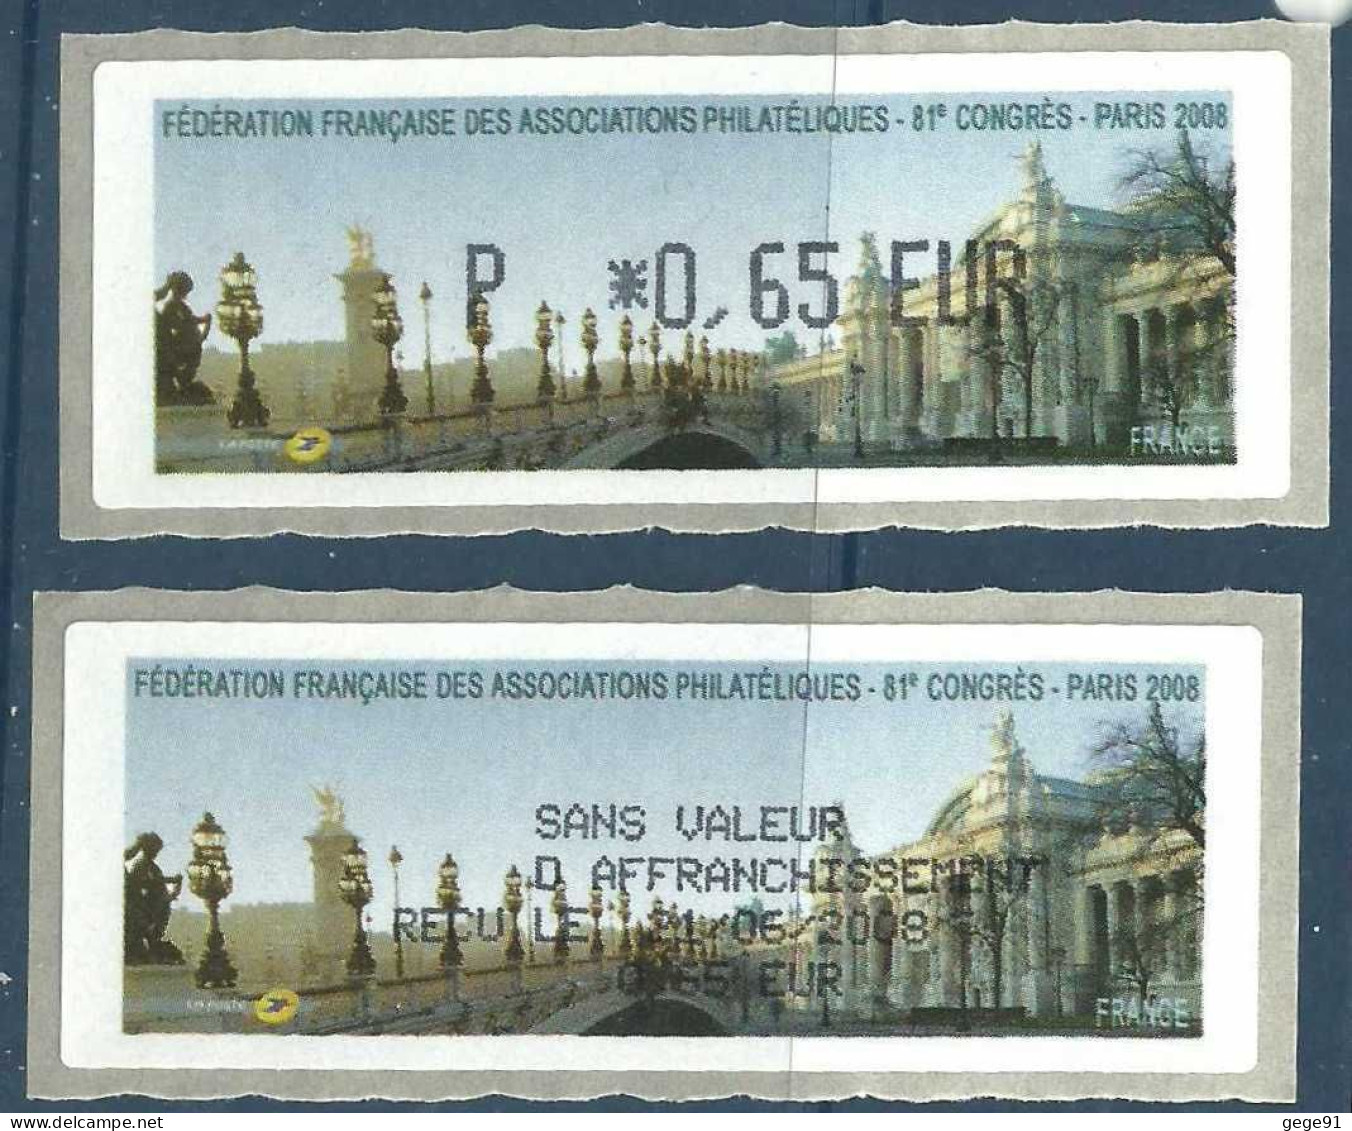 Vignette De Distributeur LISA - ATM - Pont Alexandre III - Grand Palais - Paris - Avec Reçu - 1999-2009 Illustrated Franking Labels